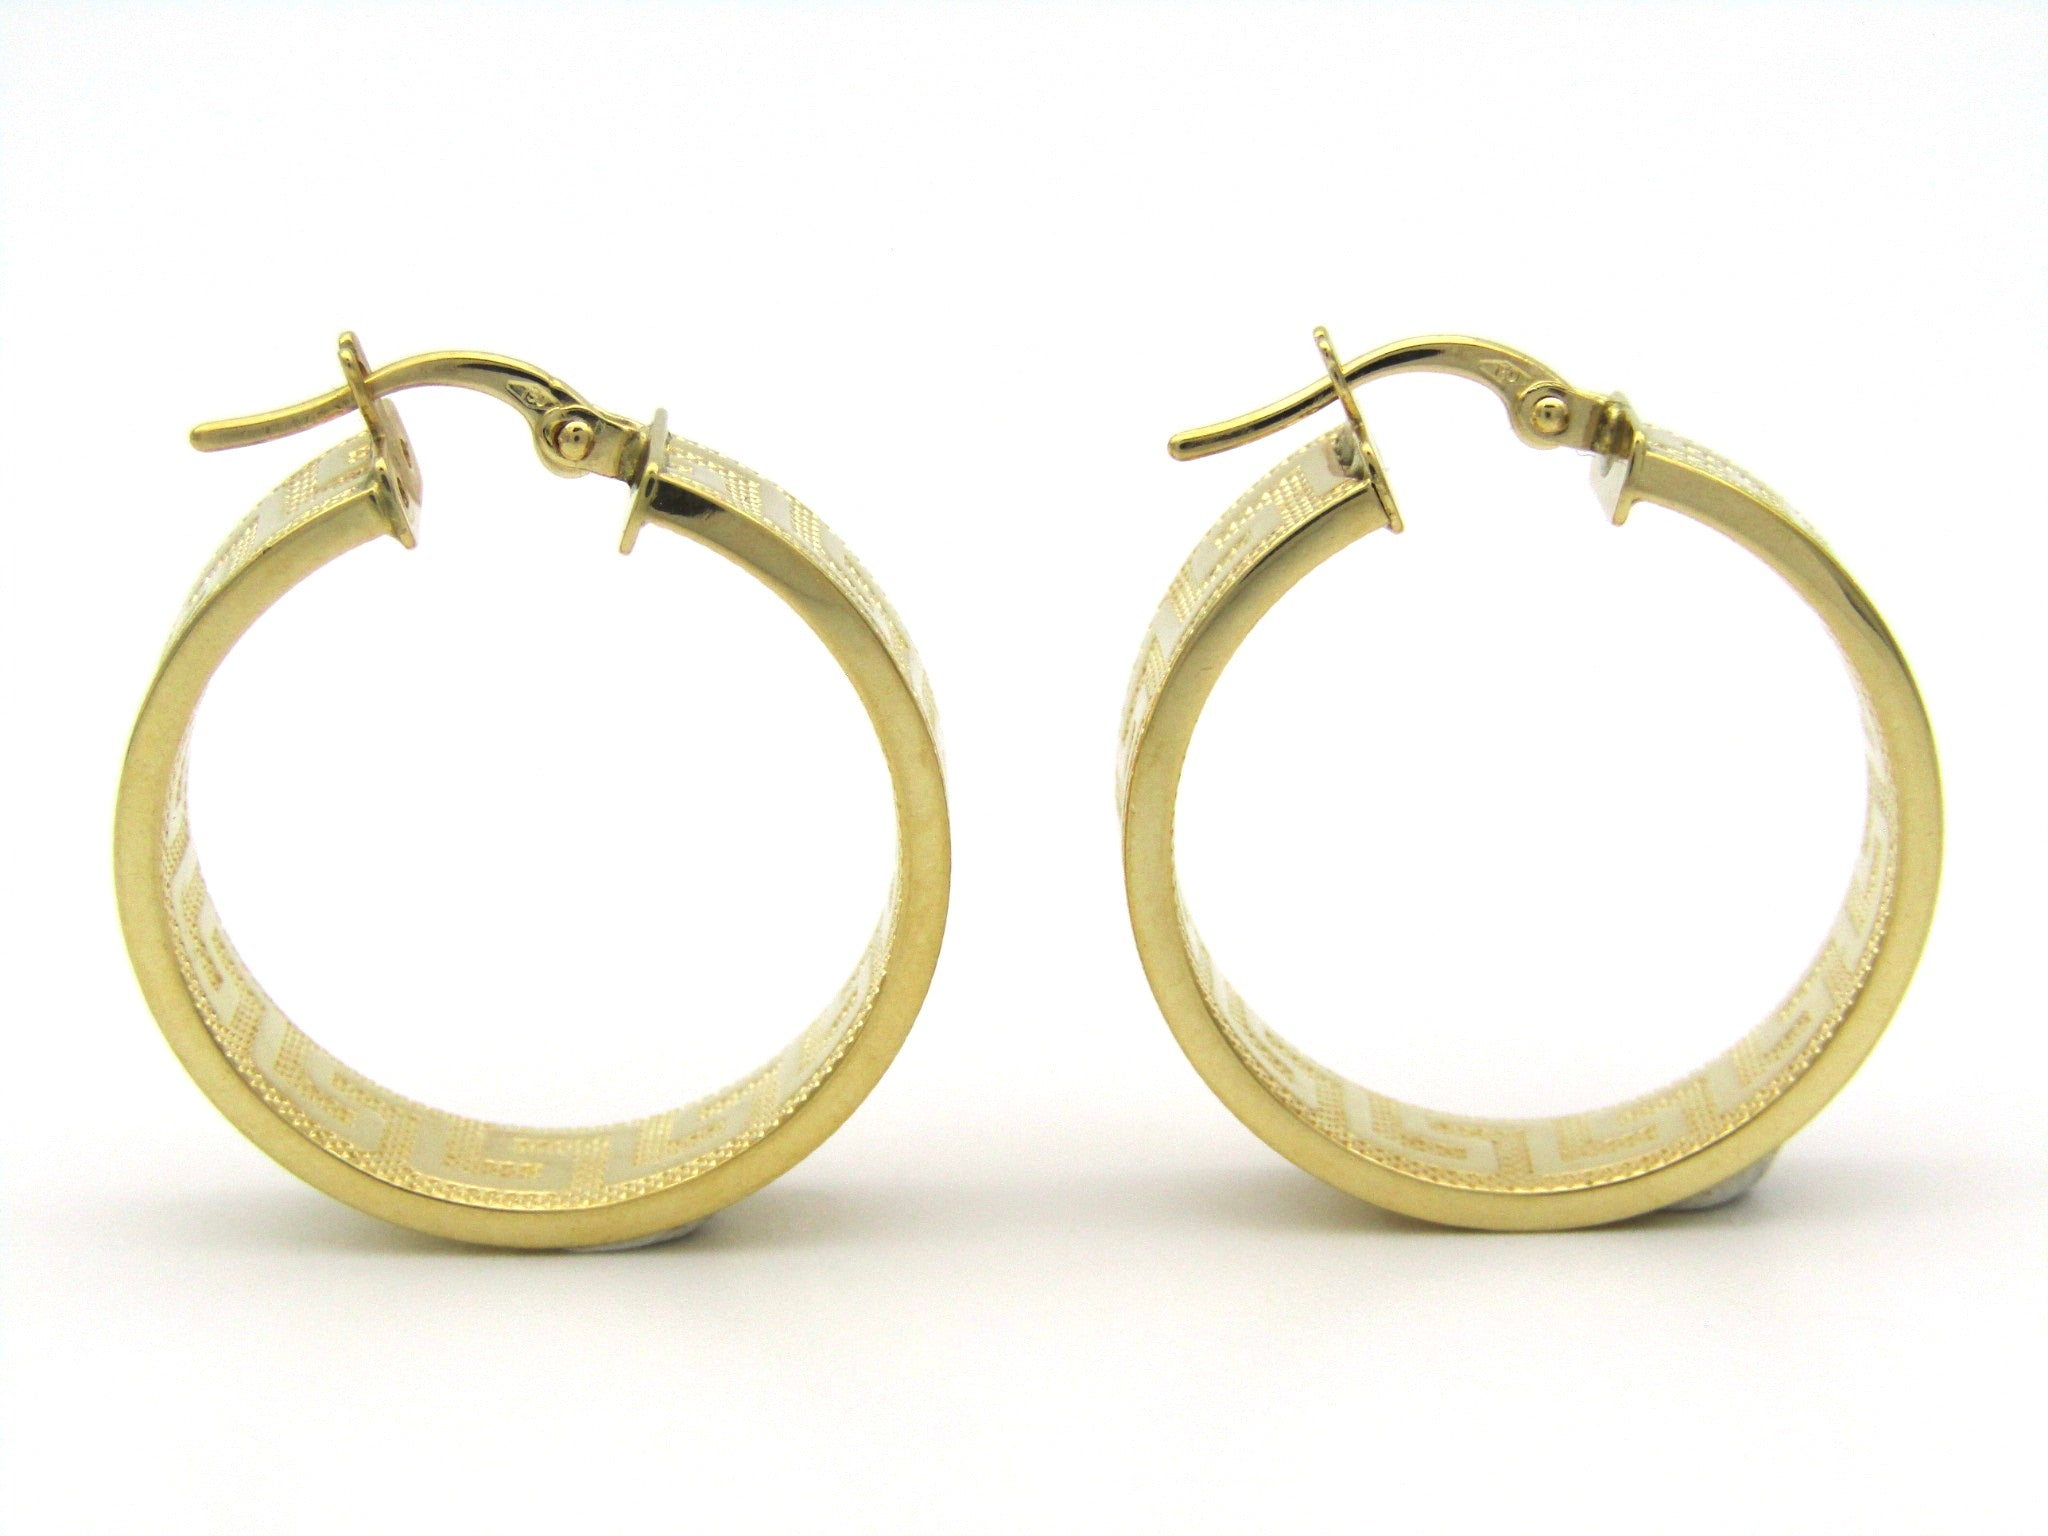 18K gold Versace style Greek Key pattern earrings.